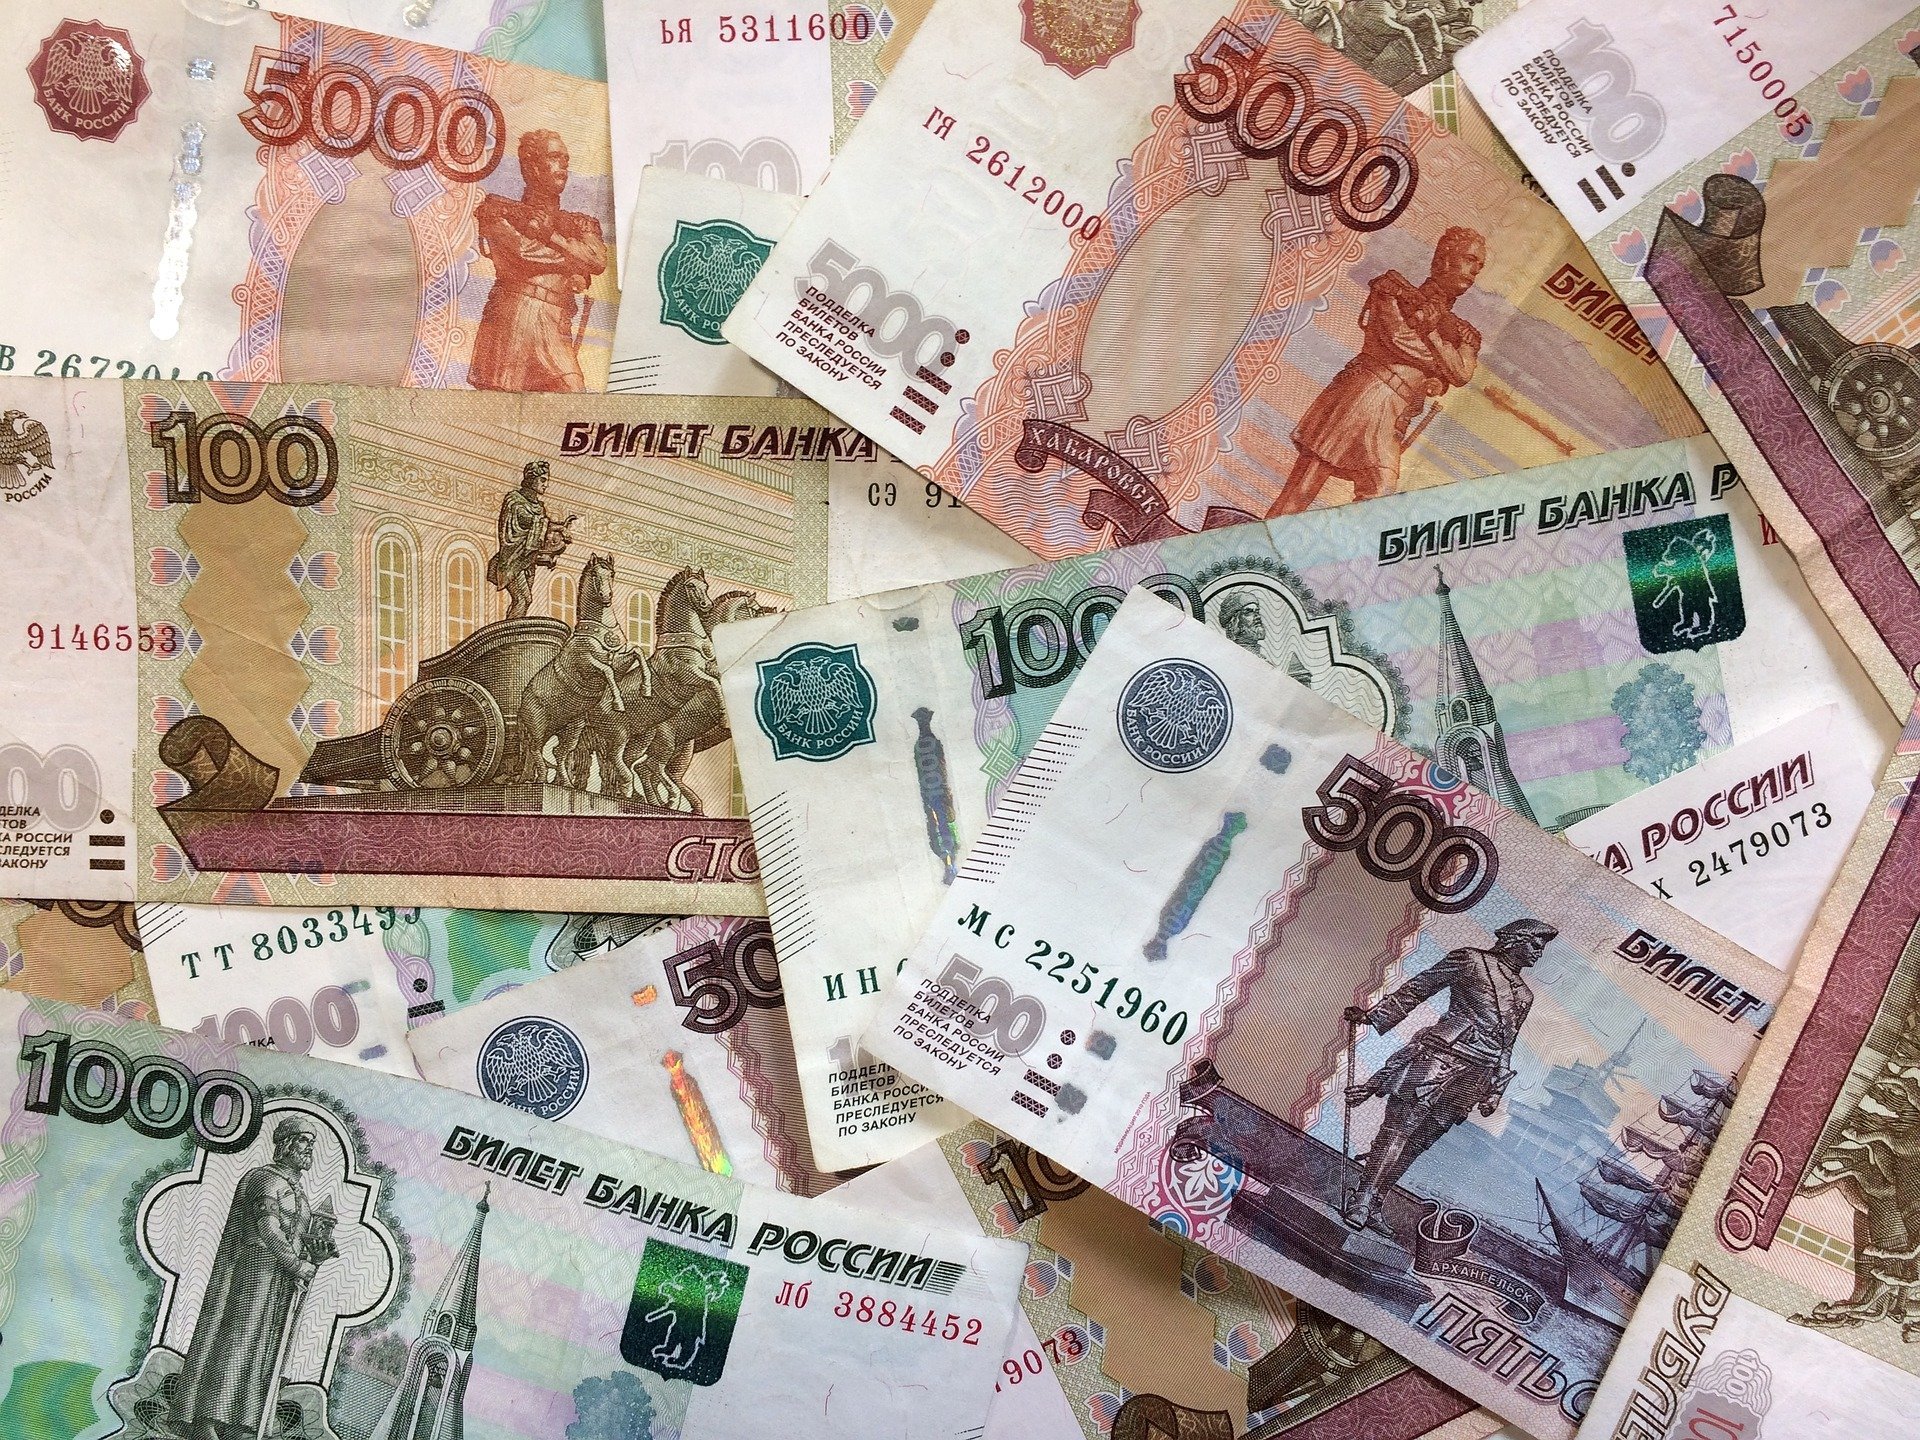 

Директор управляющей компании украл 9 миллионов рублей у жителей Сарапула 

